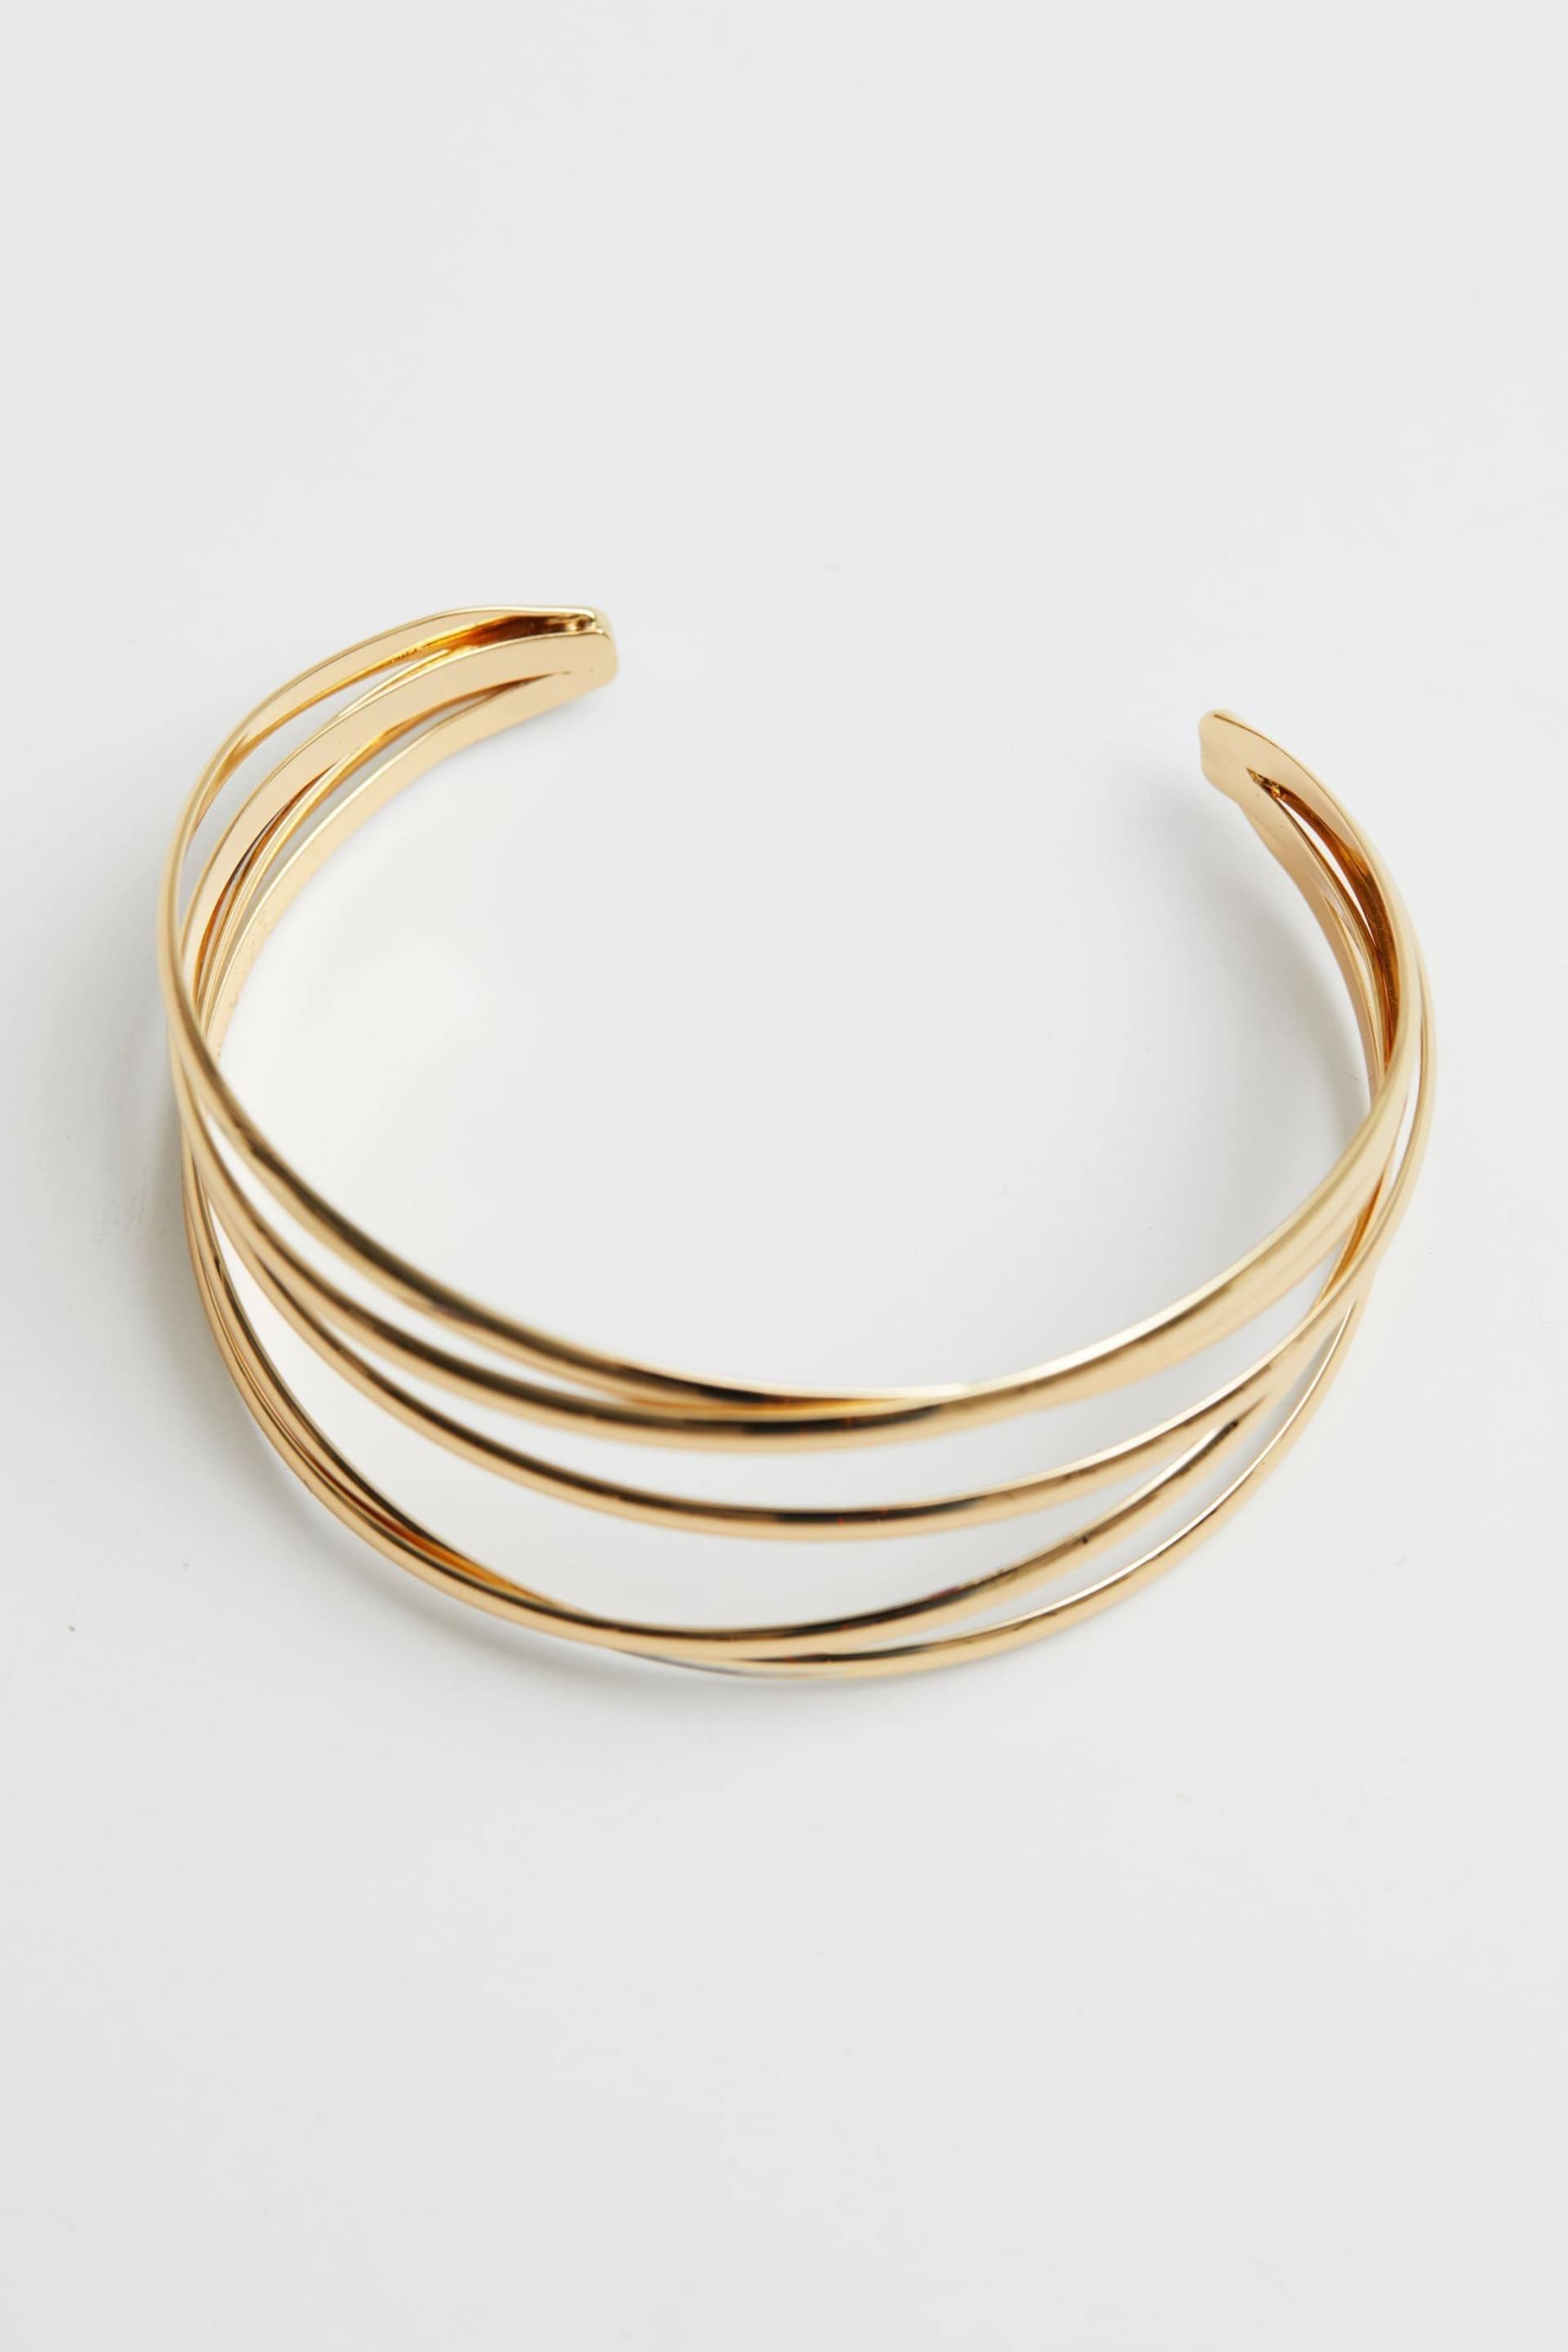 Jon Richard Gold Tone Polished Weave Cuff Bangle Bracelet - Image 1 of 2